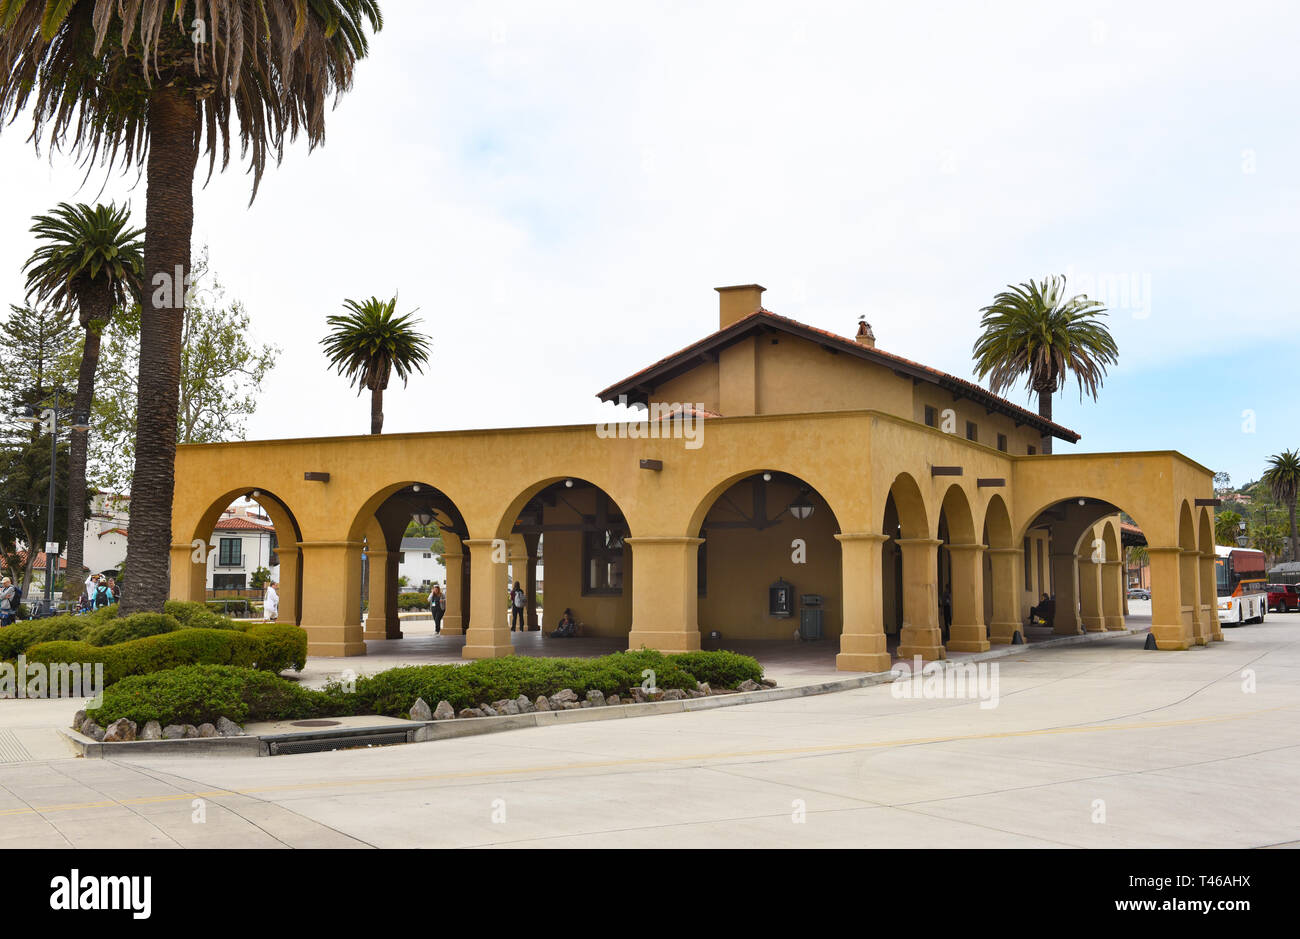 SANTA BARBARA, Kalifornien - 11. APRIL 2019: Amtrak Bahnhof Santa Barbara dient dem Coast Starlight und die Pacific Surfliner. Stockfoto